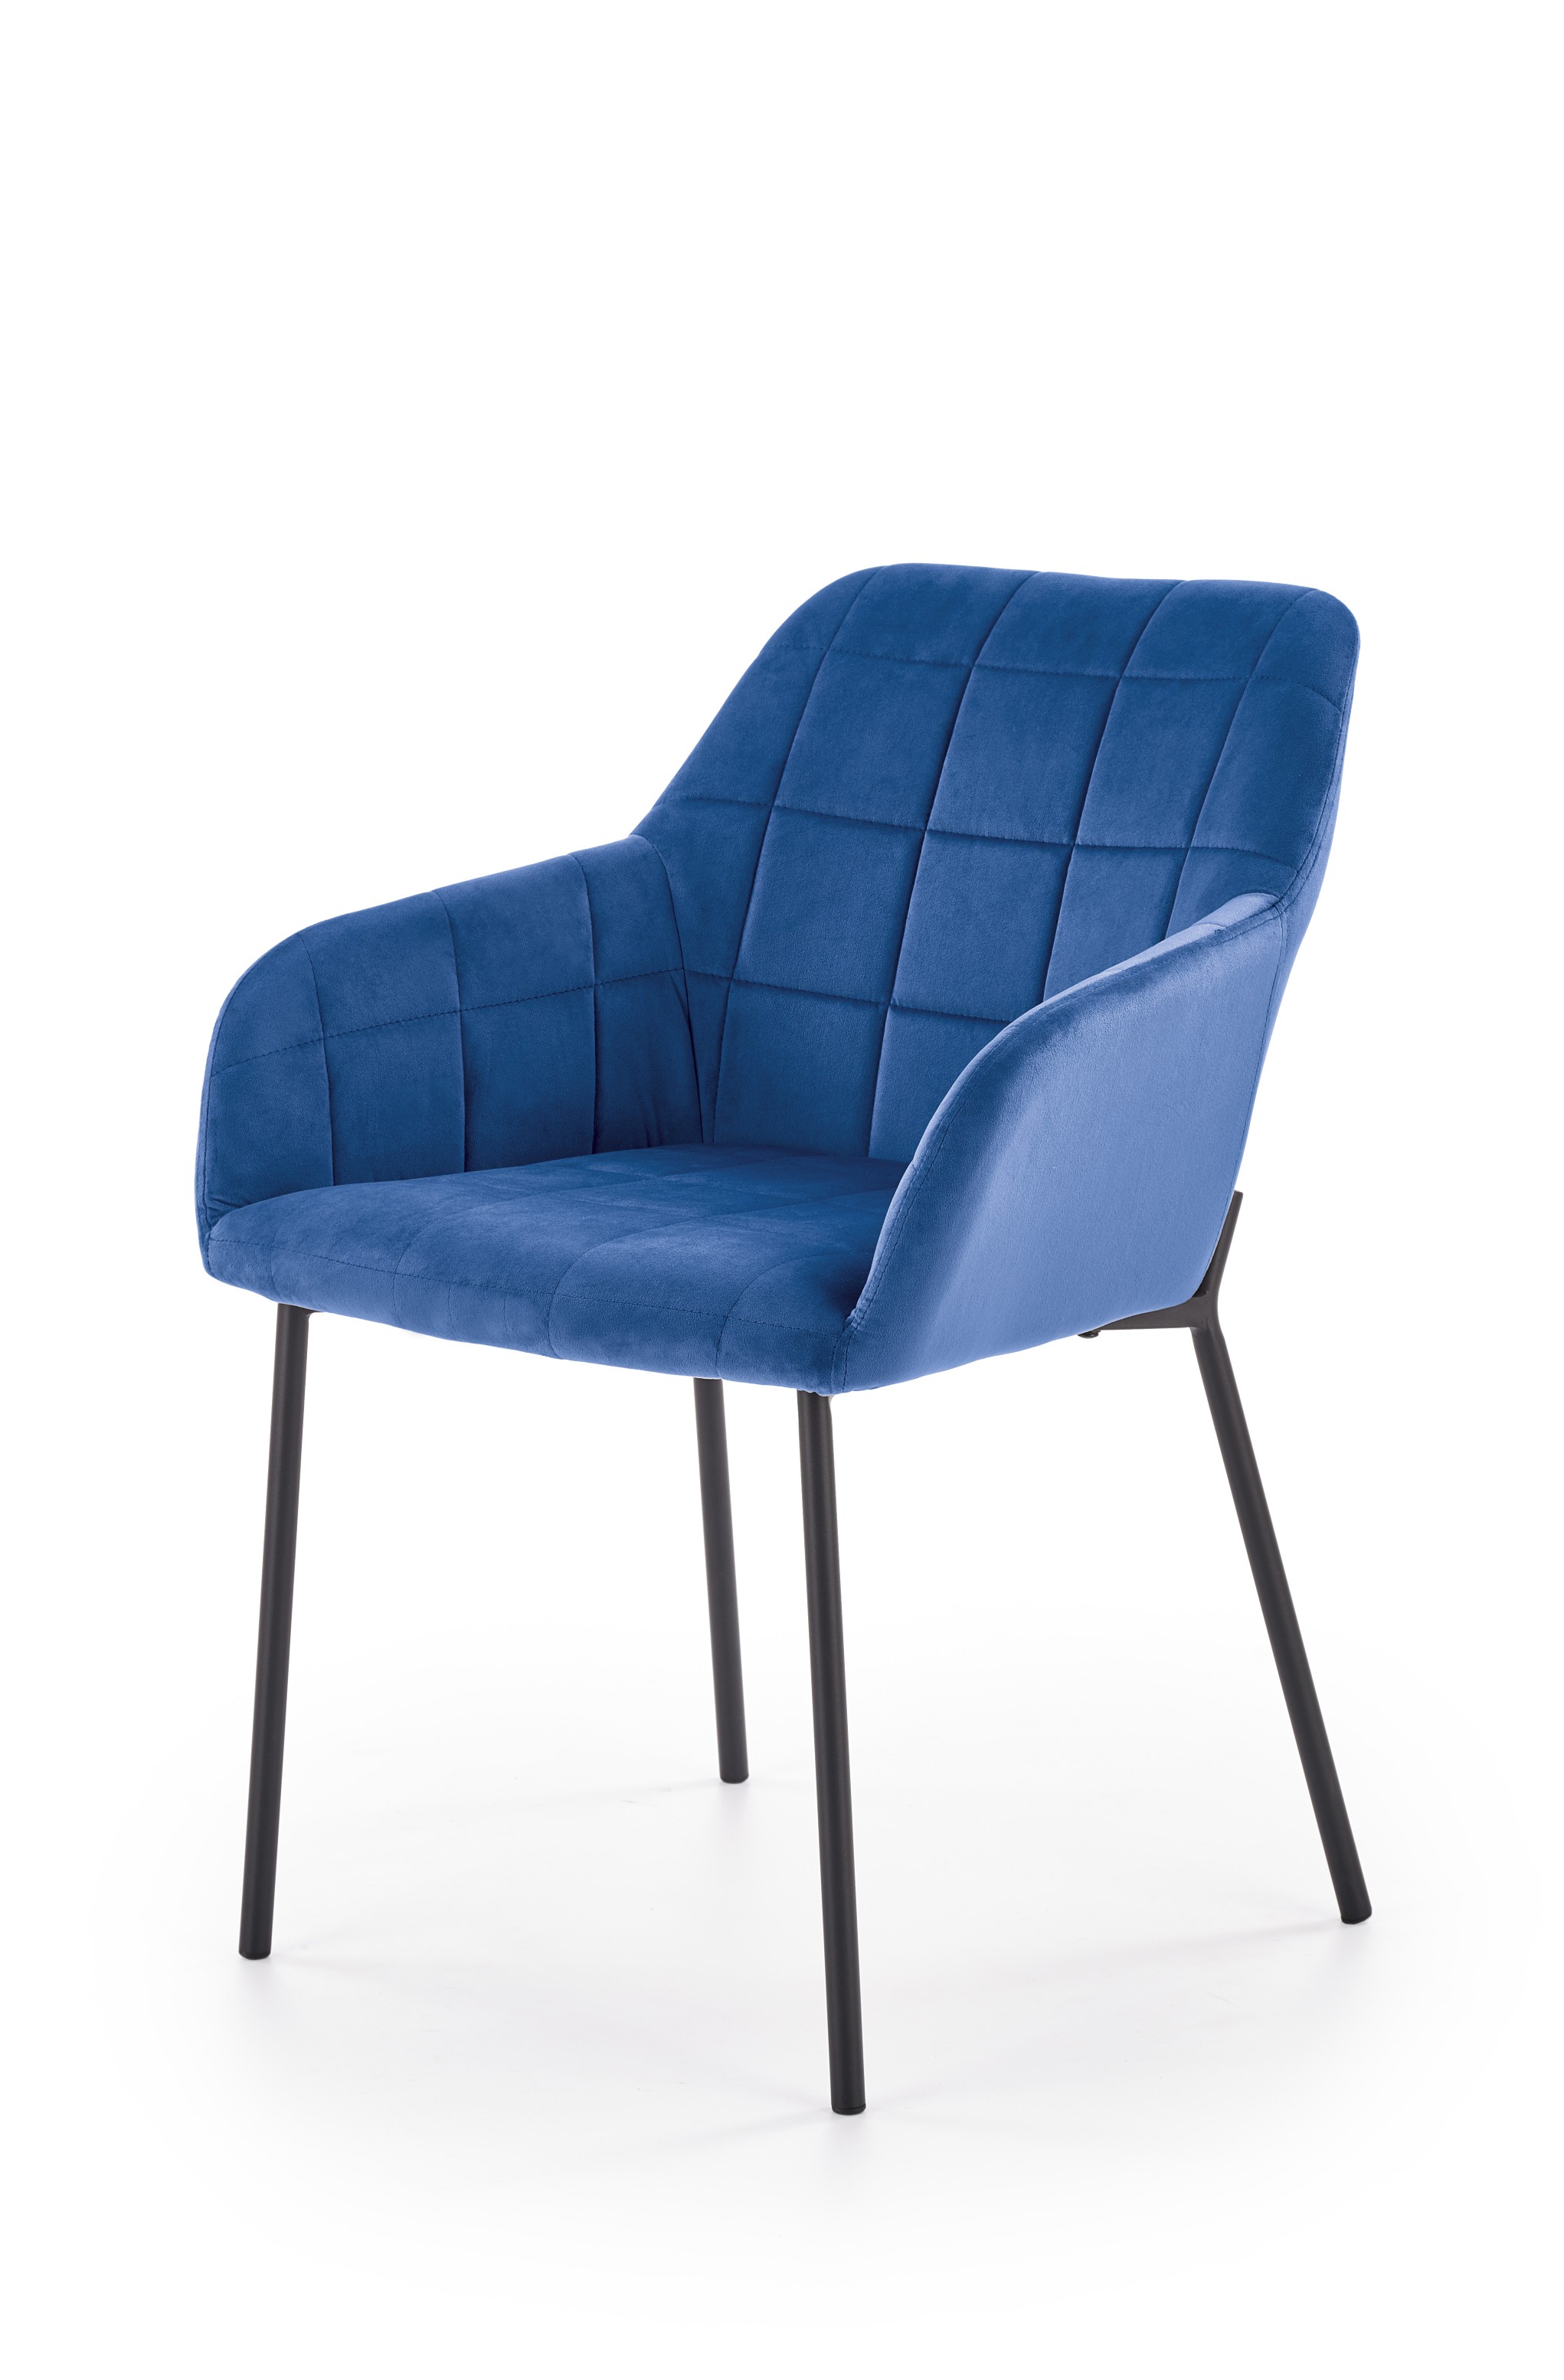 K305 szék - fekete / sötétkék k305 Židle Černá / tmavě modrá